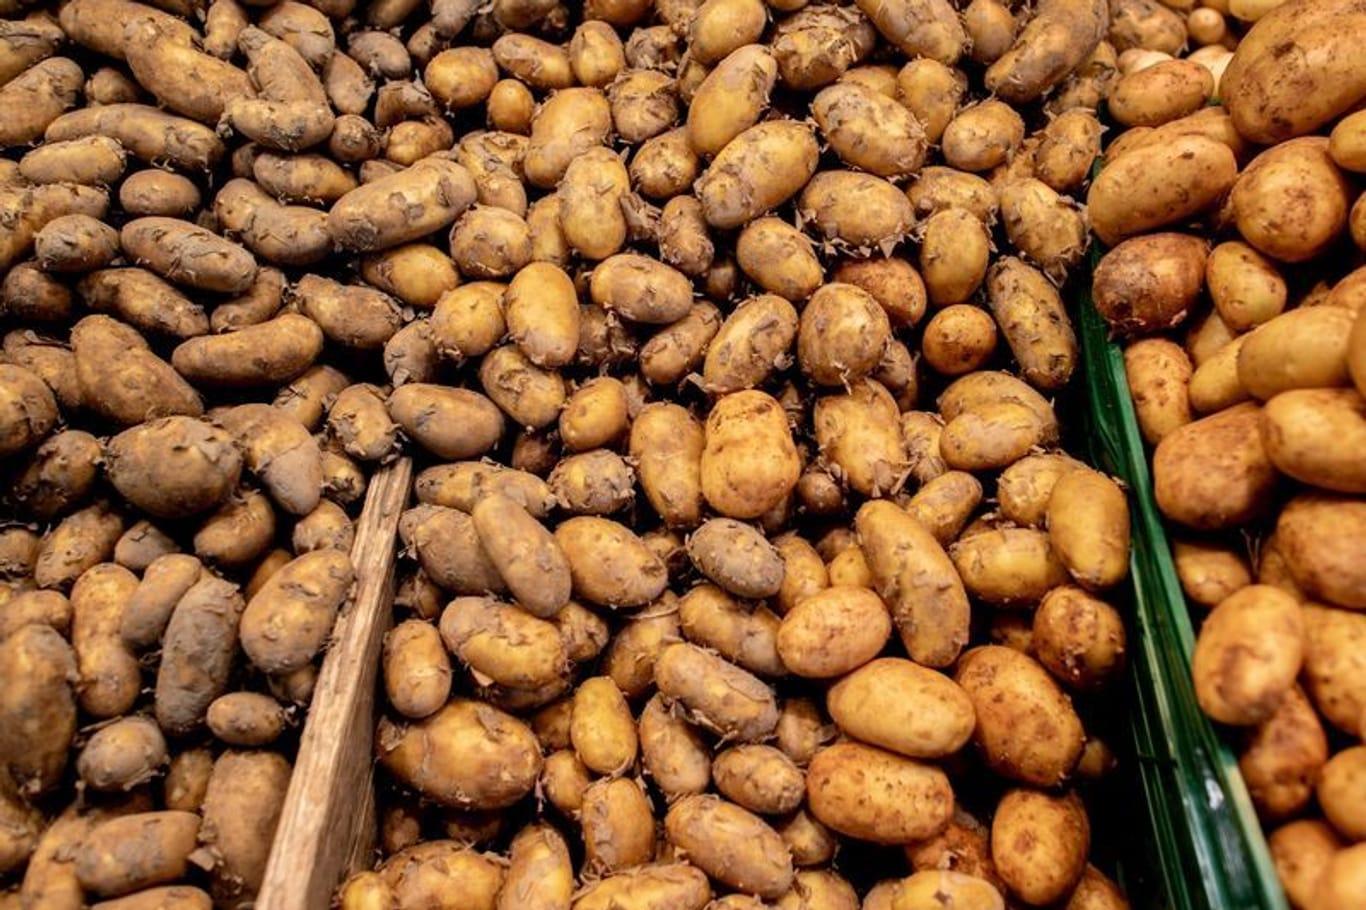 Allgemein ist das Angebot an Frühkartoffeln in diesem Jahr eher knapp.